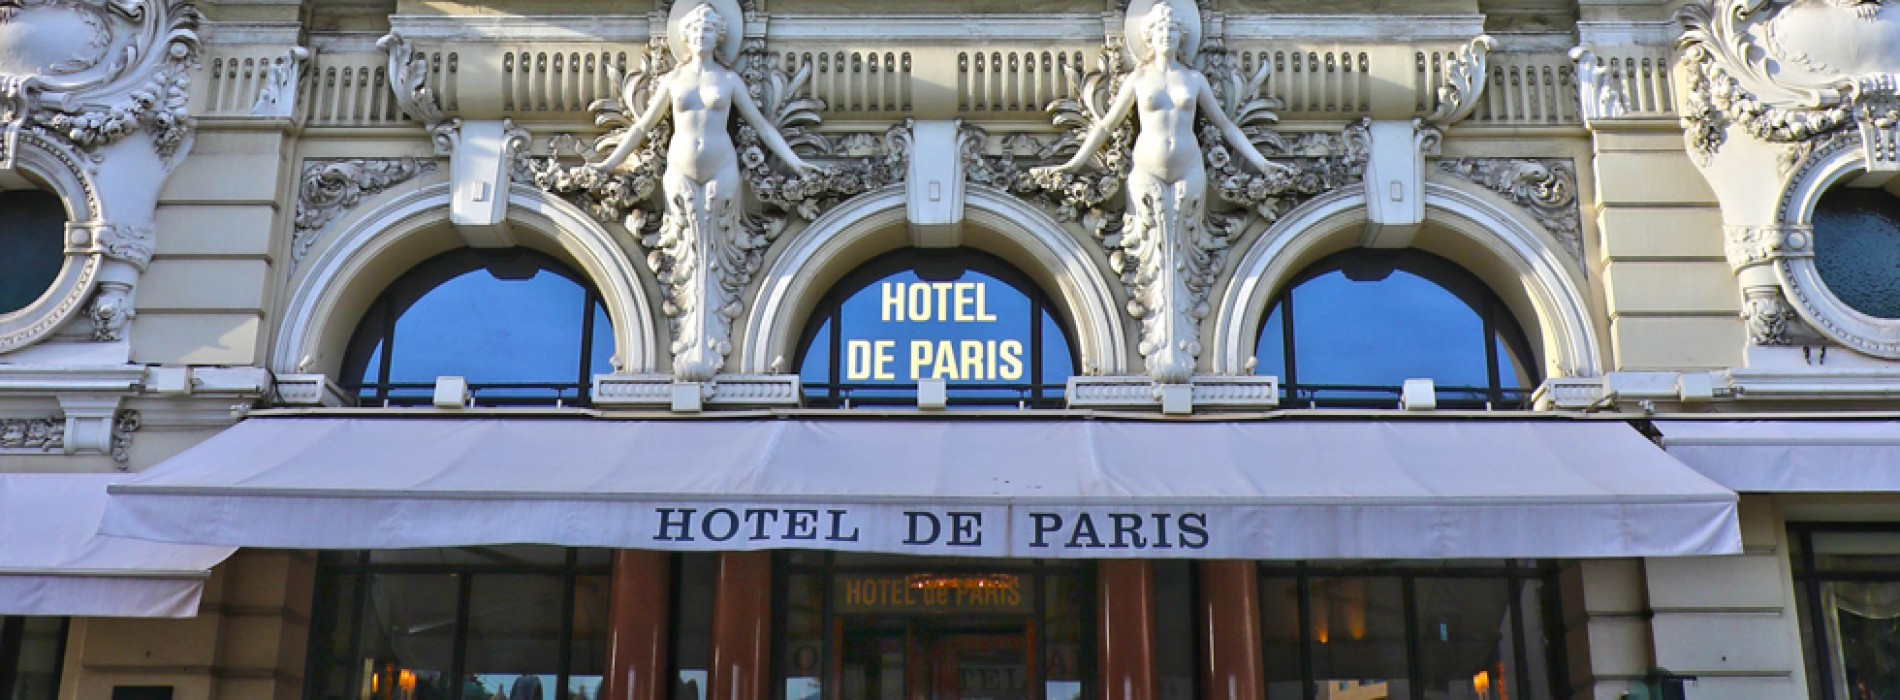 The Hôtel de Paris Monte-Carlo unveils its secrets